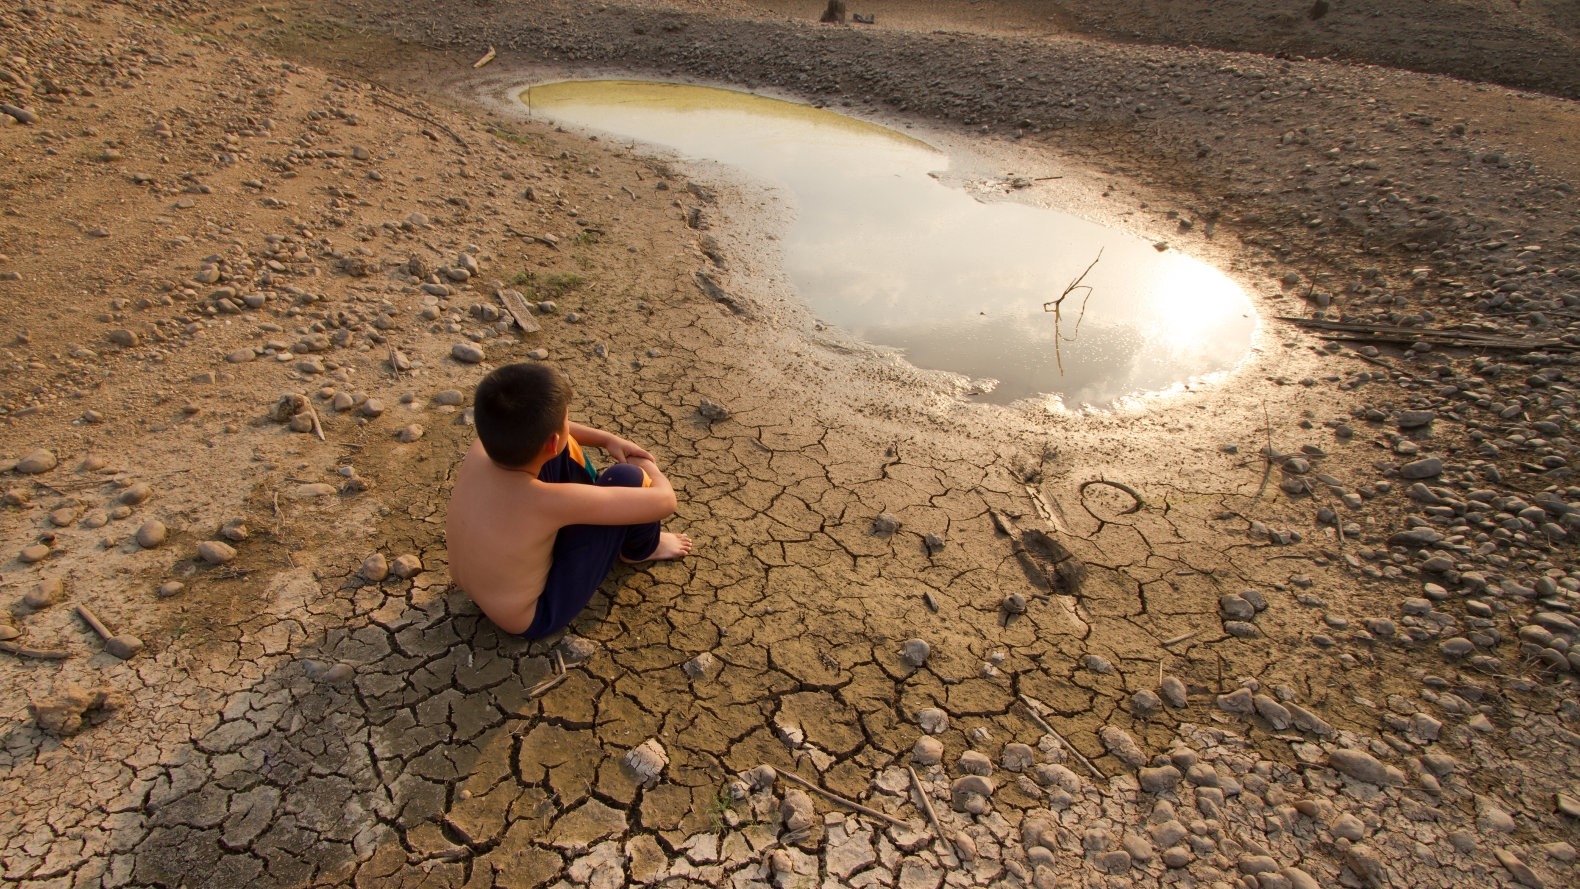 بحلول عام 2050 نصف سكان العالم يمكن أن تترك دون المياه العذبة